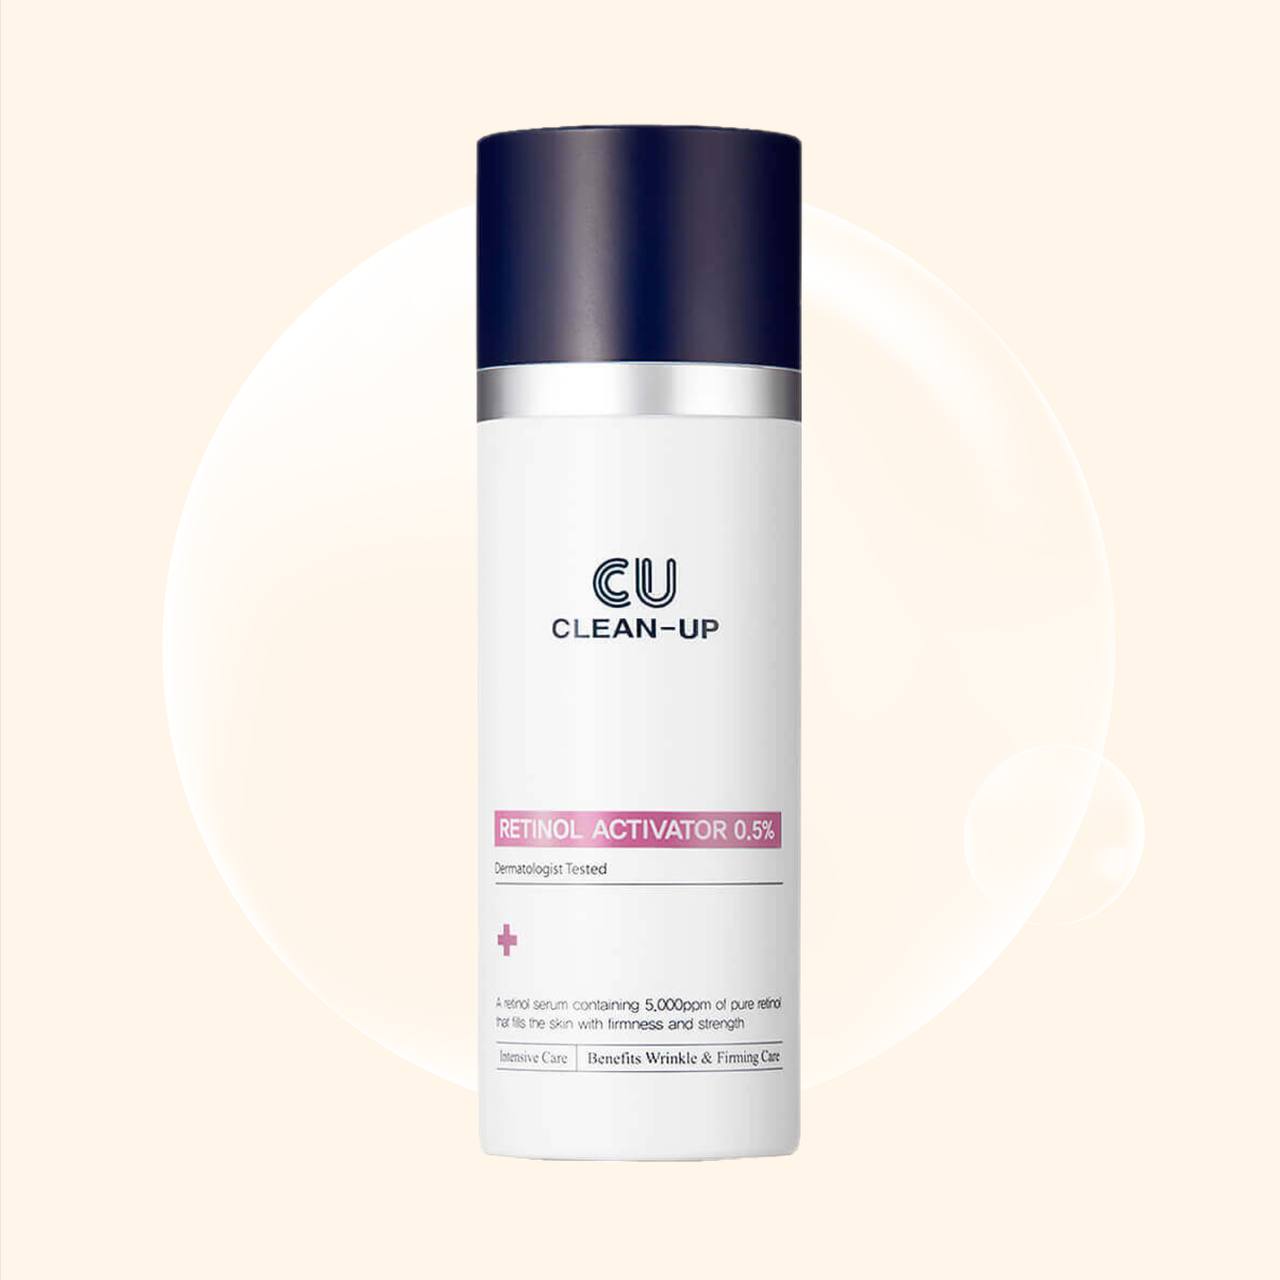 Крем skin clean. Cu Skin Retinol Activator 0.5. CUSKIN clean-up Retinol. Cu clean up ретинол. Сыворотка-активатор с инкапсулированным ретинолом CUSKIN Retinol Activator 0.5%.